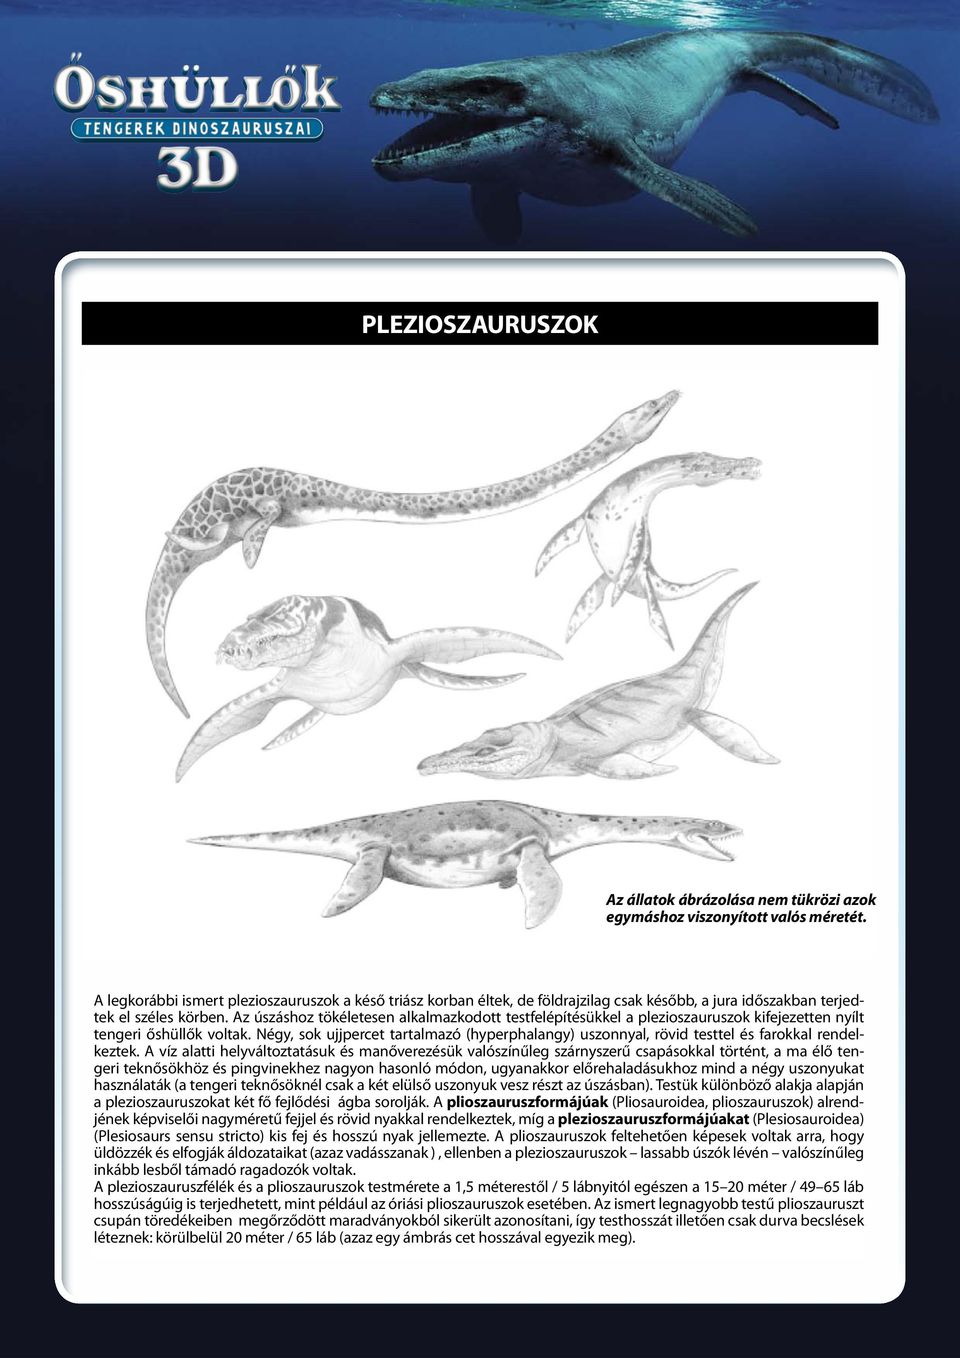 Az úszáshoz tökéletesen alkalmazkodott testfelépítésükkel a plezioszauruszok kifejezetten nyílt tengeri őshüllők voltak.